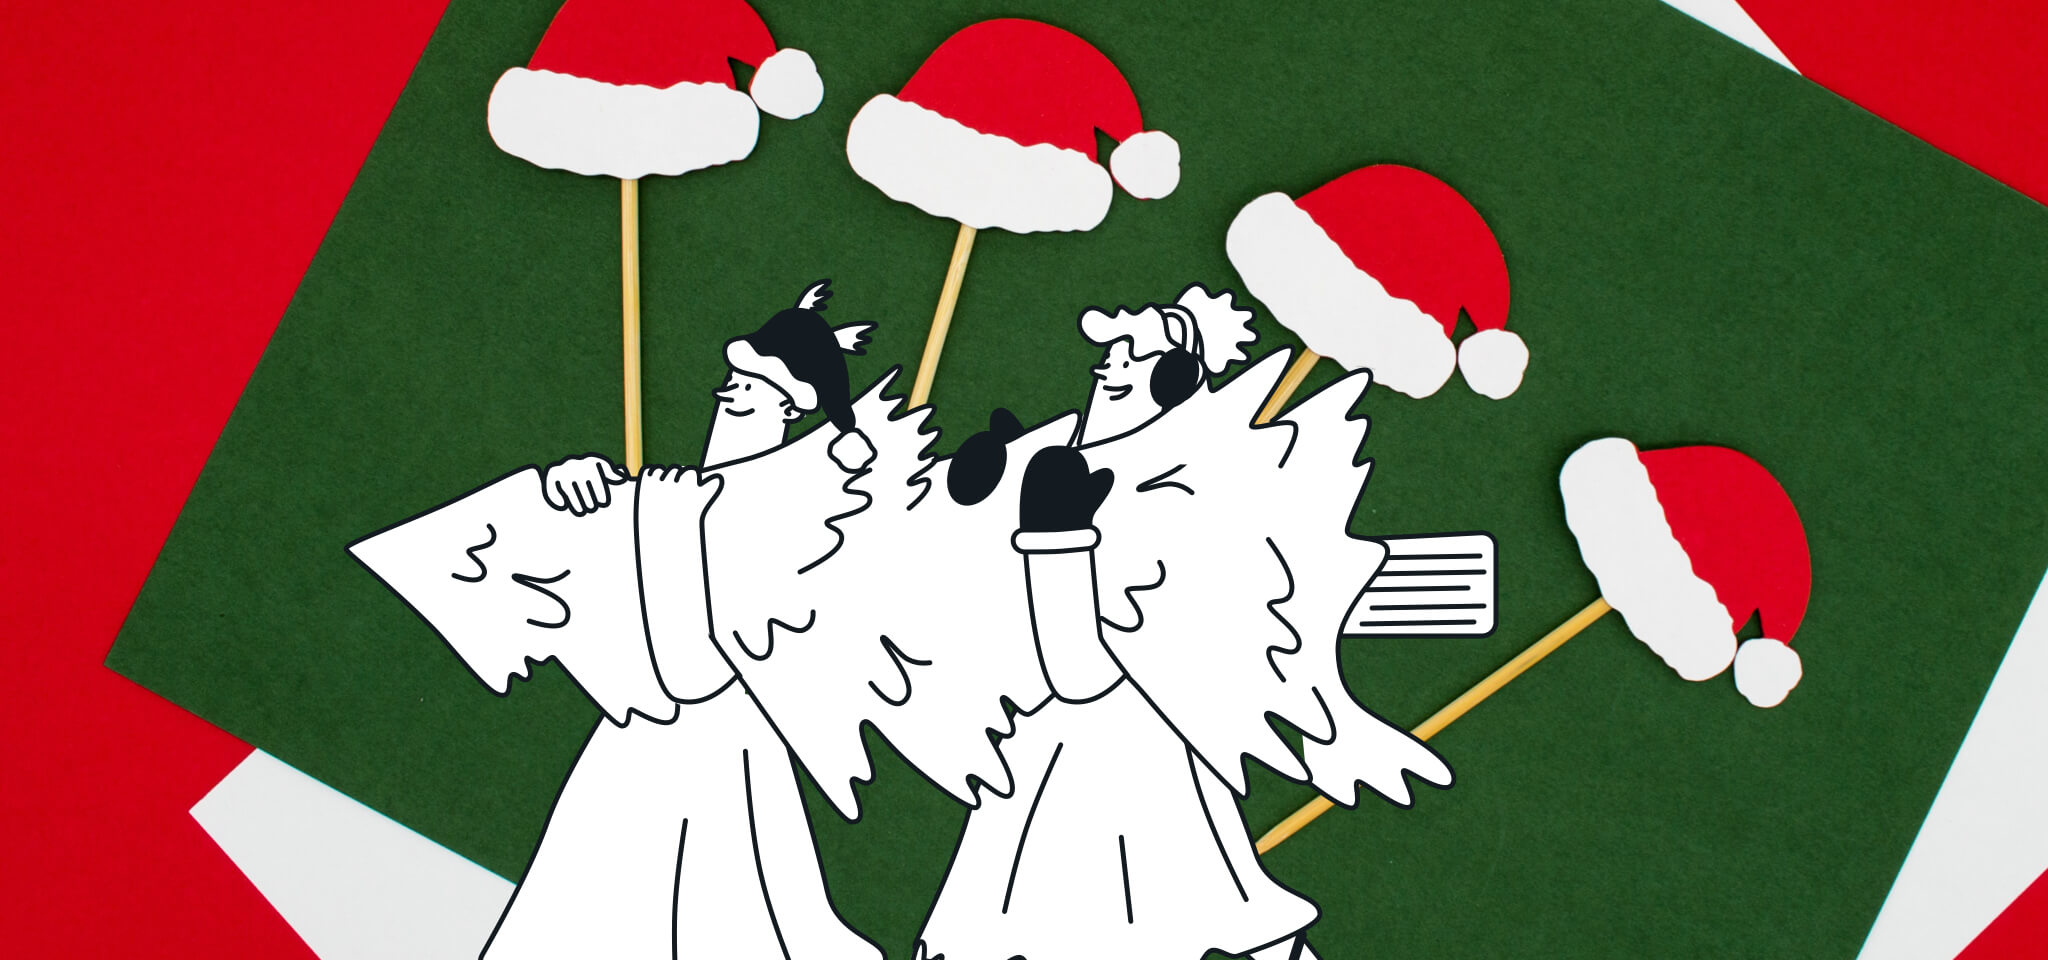 Hermes und eine Göttin tragen einen Weihnachtsbaum vor den Weihnachtsmannmützen